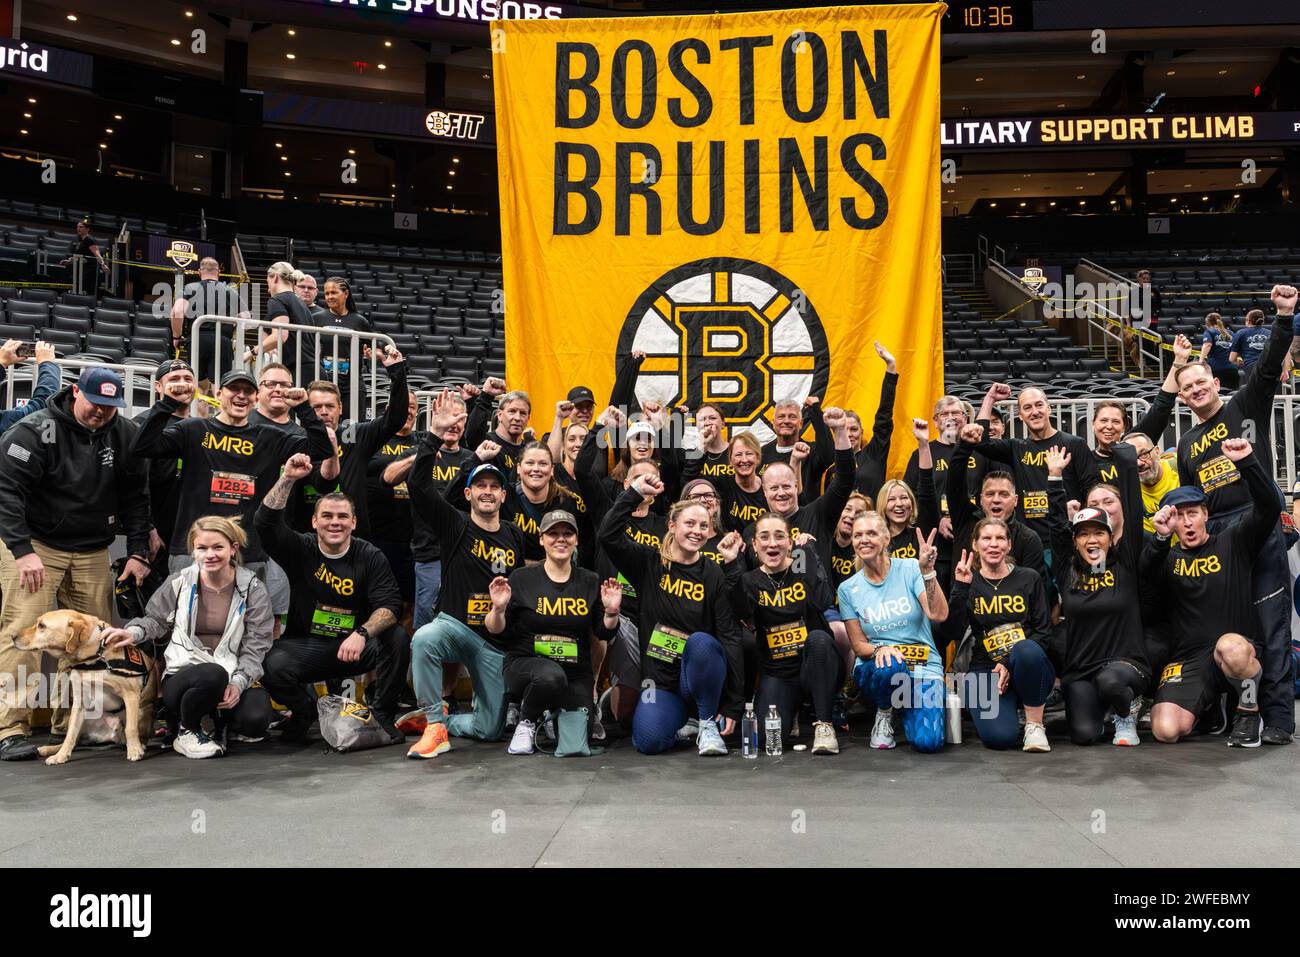 L'ottava edizione annuale della BFit Challenge, organizzata dalla Boston Bruins Foundation, raccogliendo fondi per le organizzazioni di beneficenza che sostengono i soccorritori e i membri militari. Foto Stock